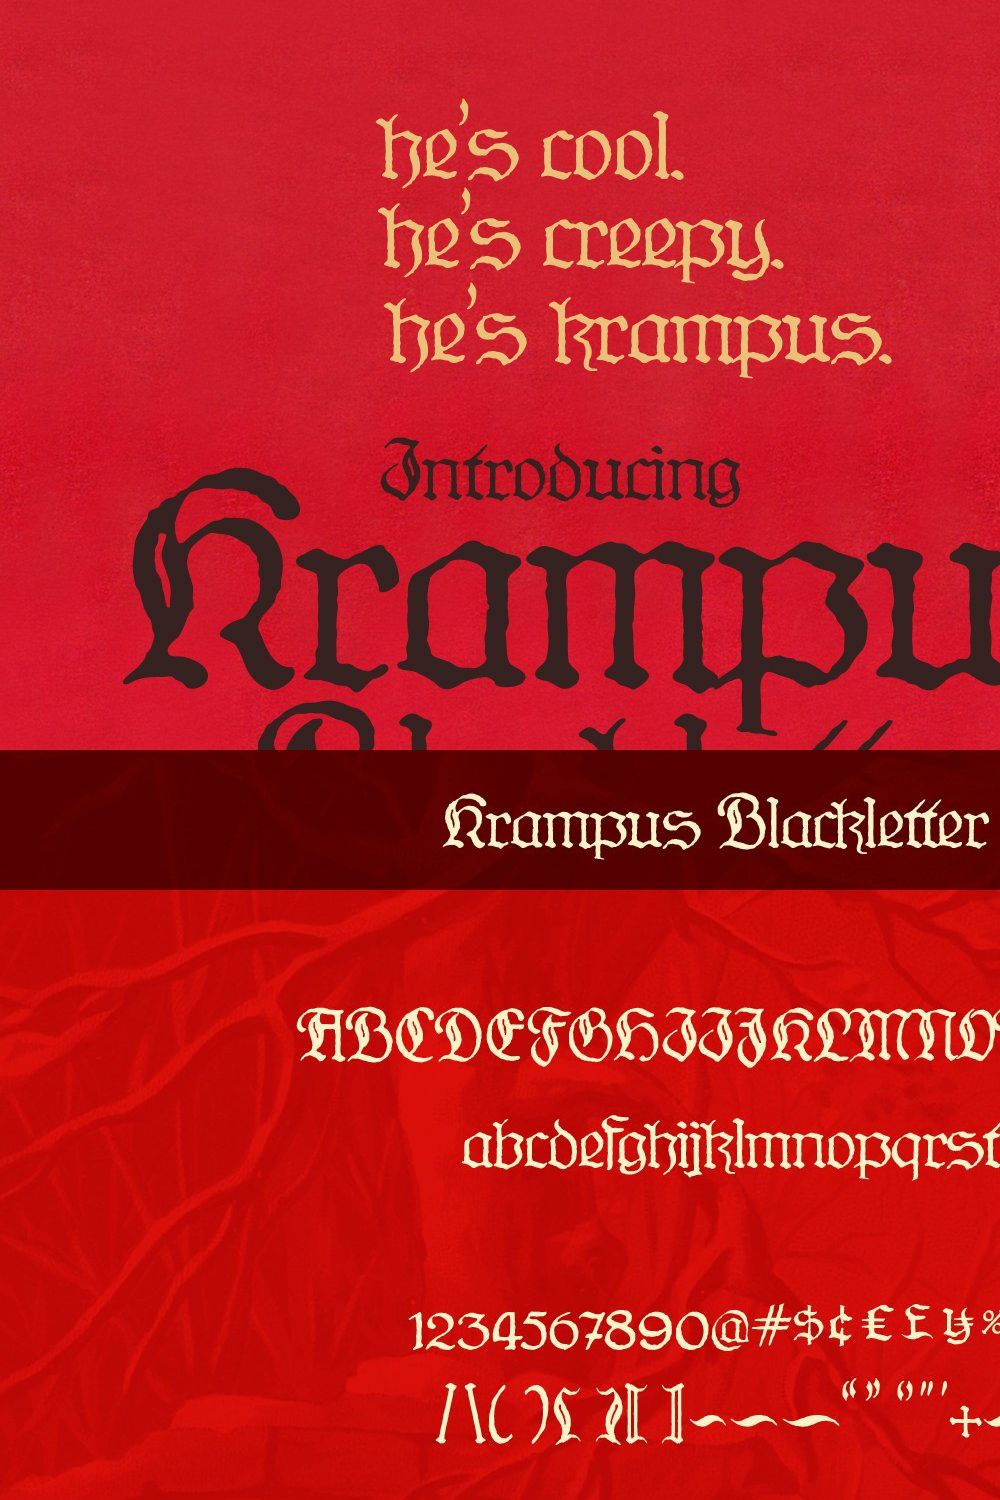 Krampus Blackletter Vintage Font pinterest preview image.